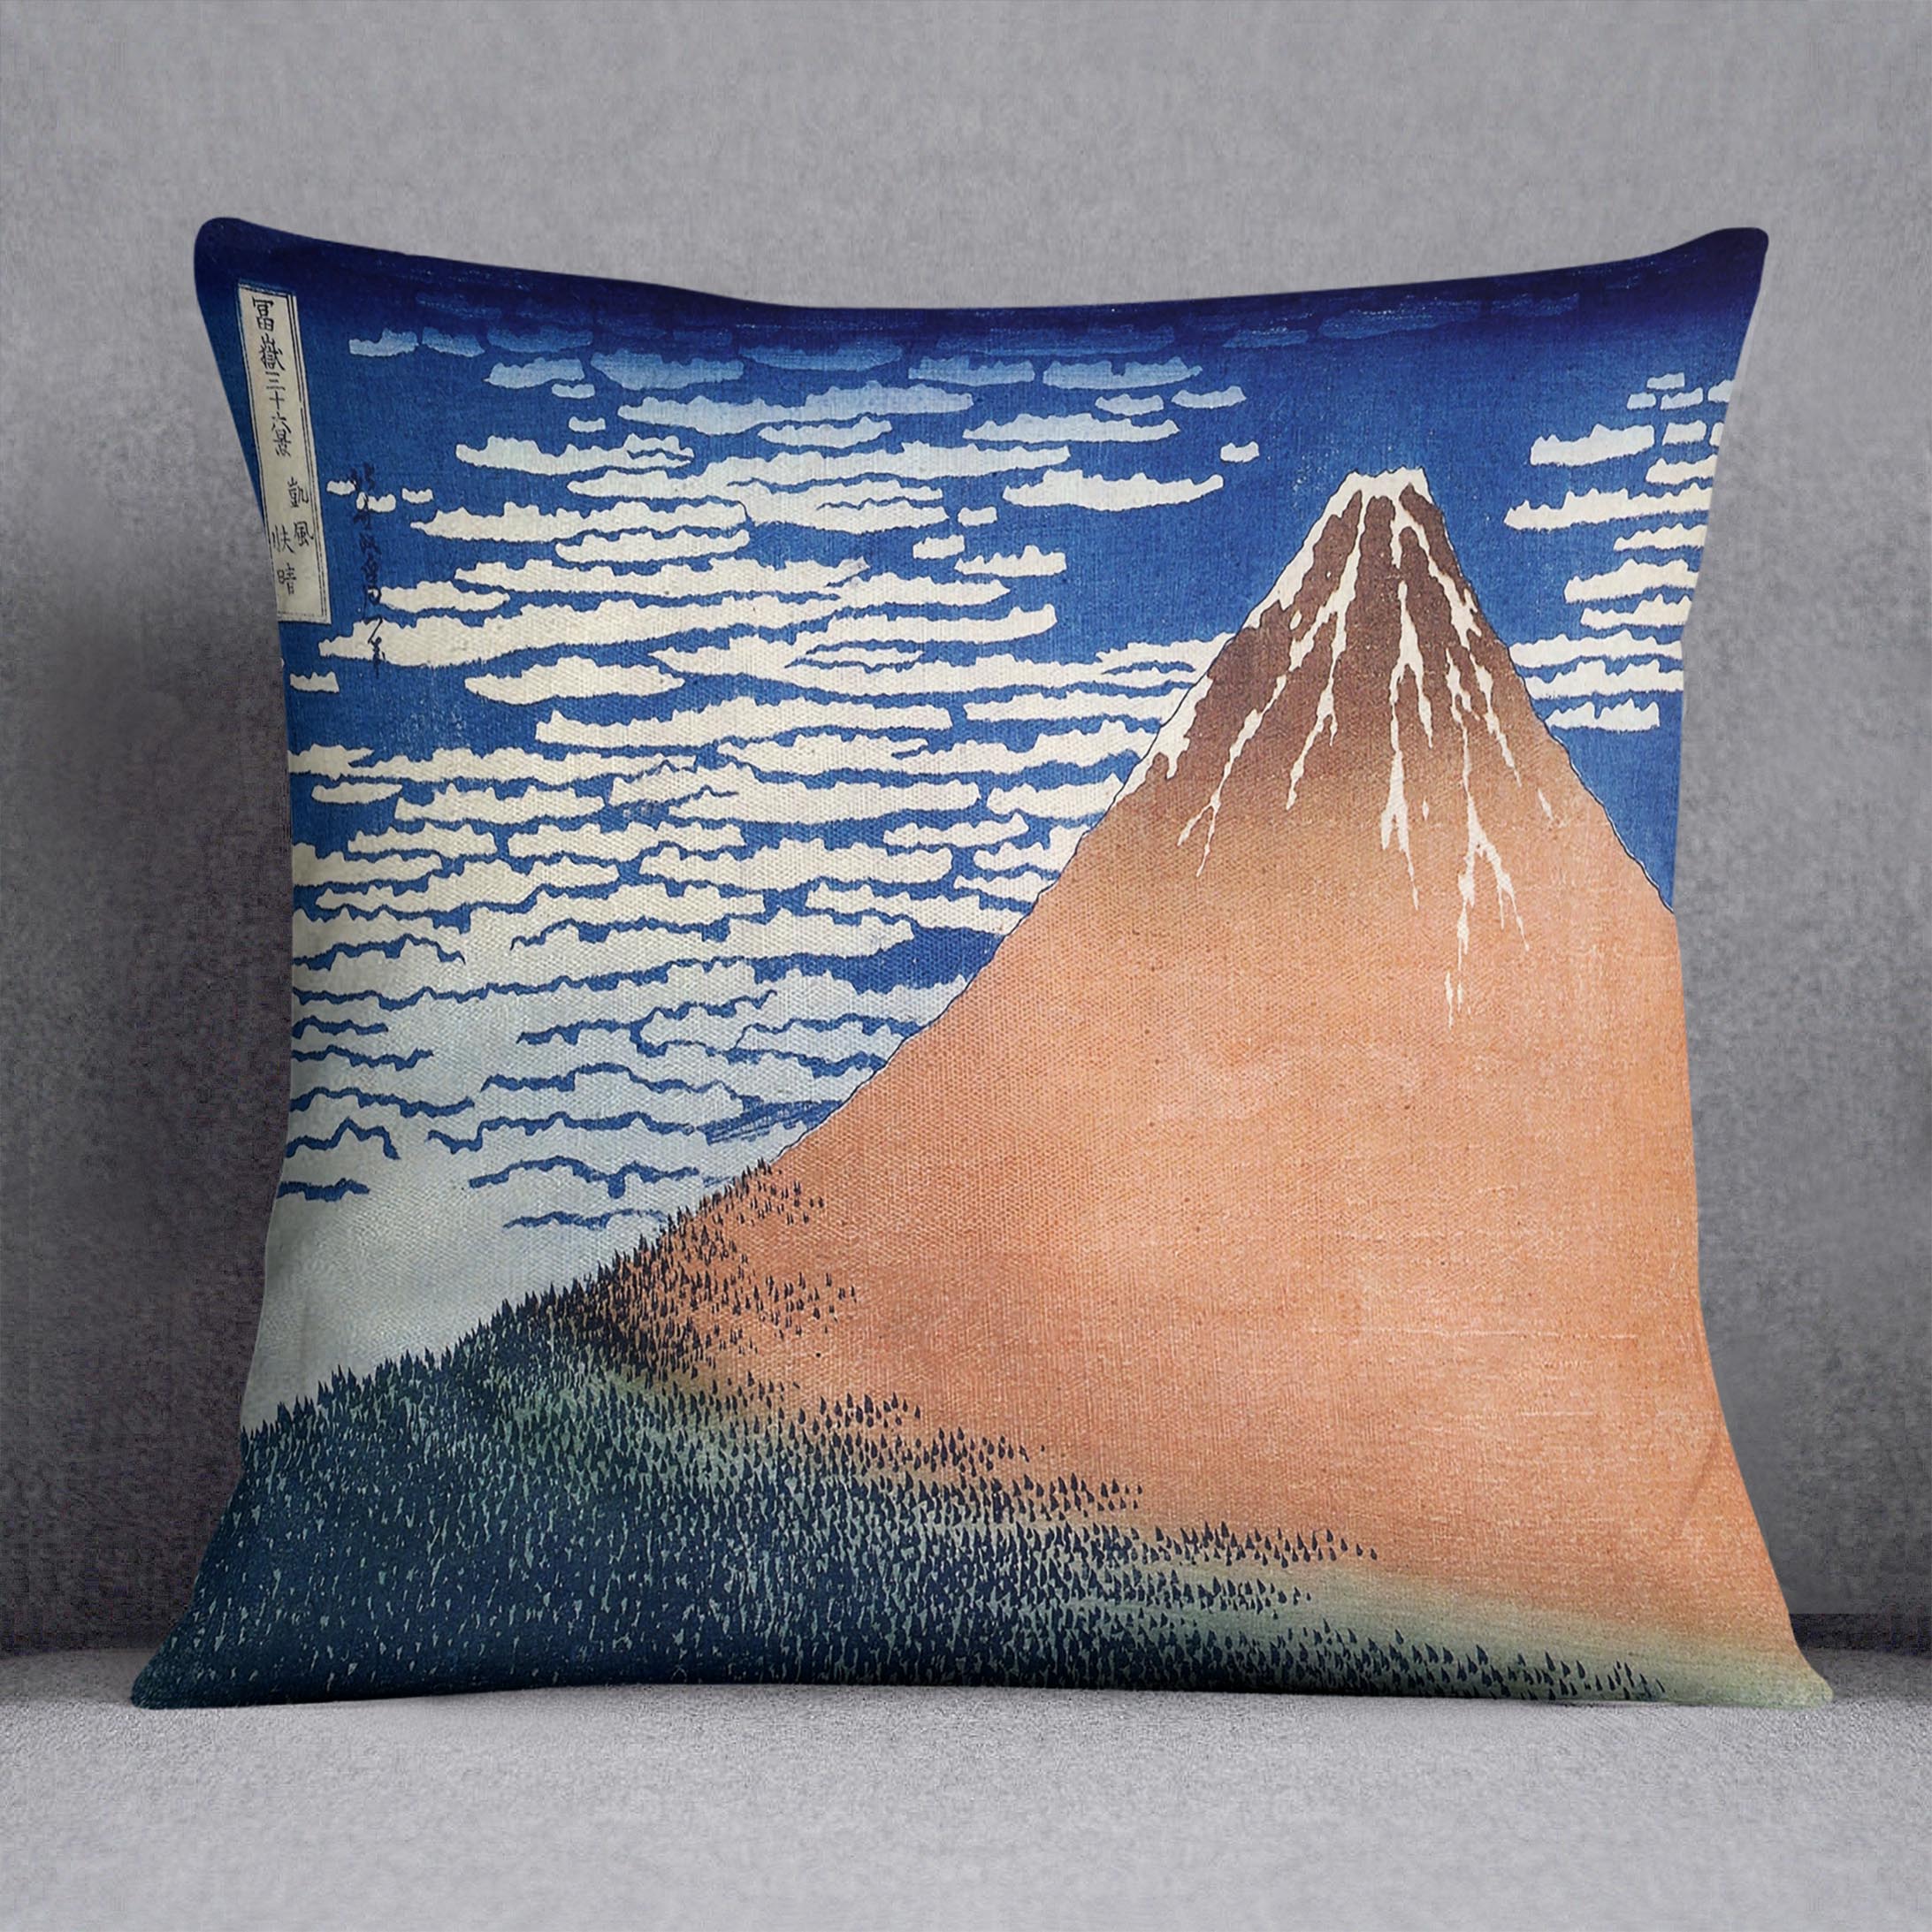 Mount Fuji by Hokusai Cushion